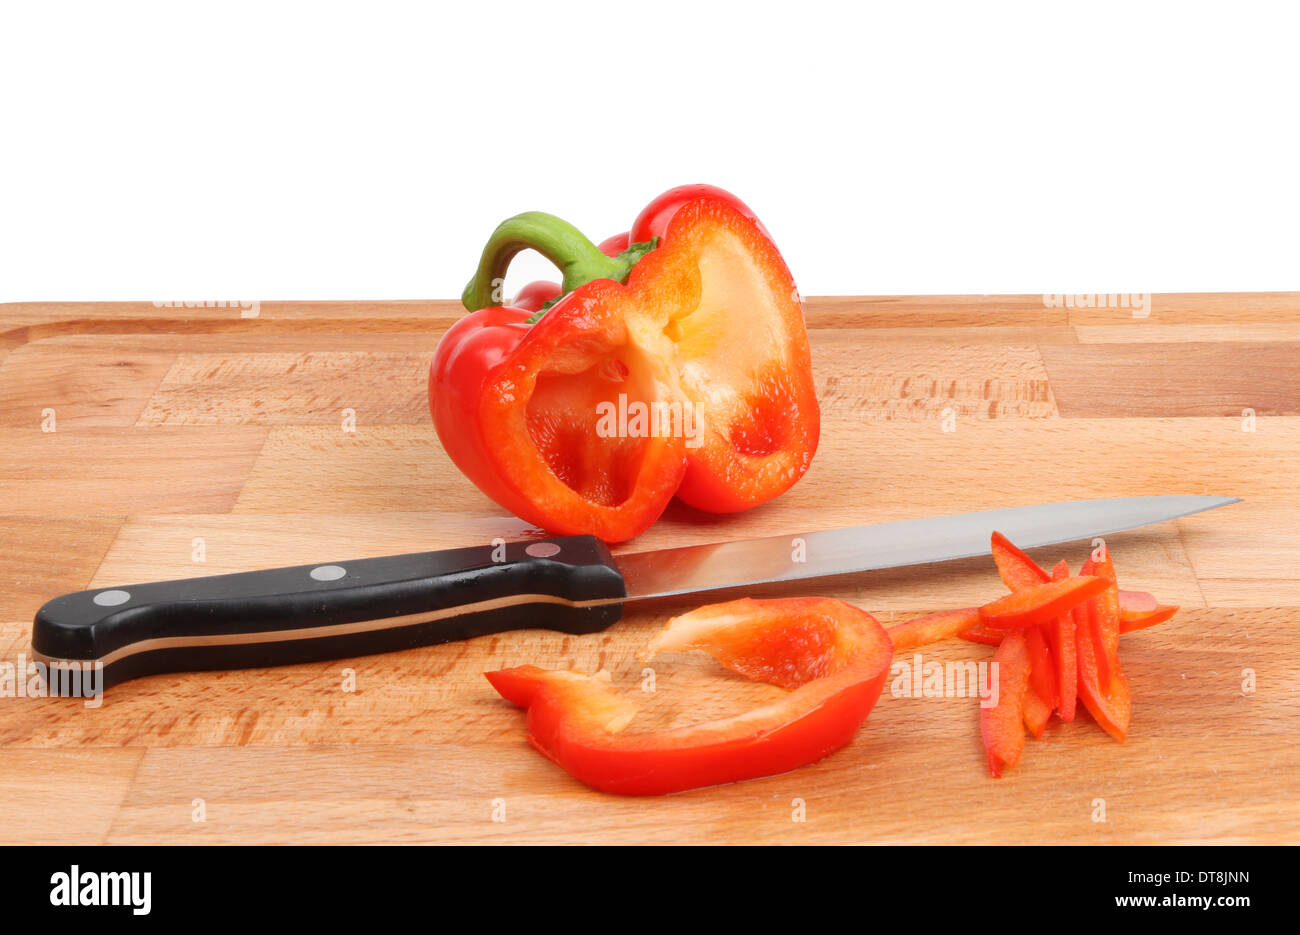 Schneiden Sie rote Paprika mit einem Messer auf einem Holzbrett vor einem weißen Hintergrund Stockfoto